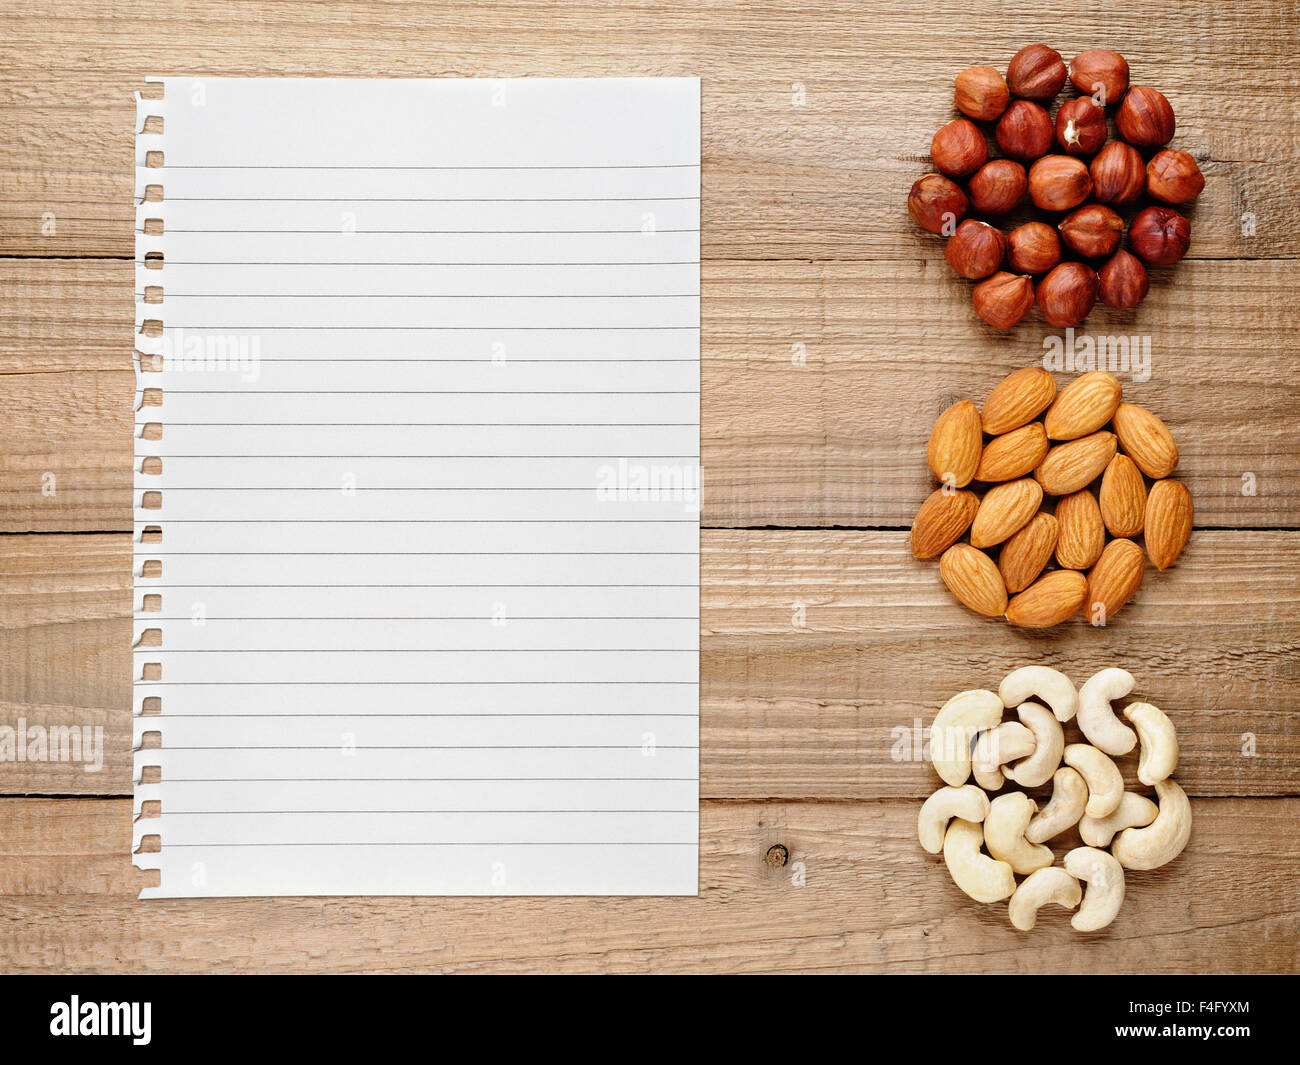 HaselnГјsse, Mandeln, Cashew-Nüssen und Papier für Rezept auf hölzernen Hintergrund Stockfoto